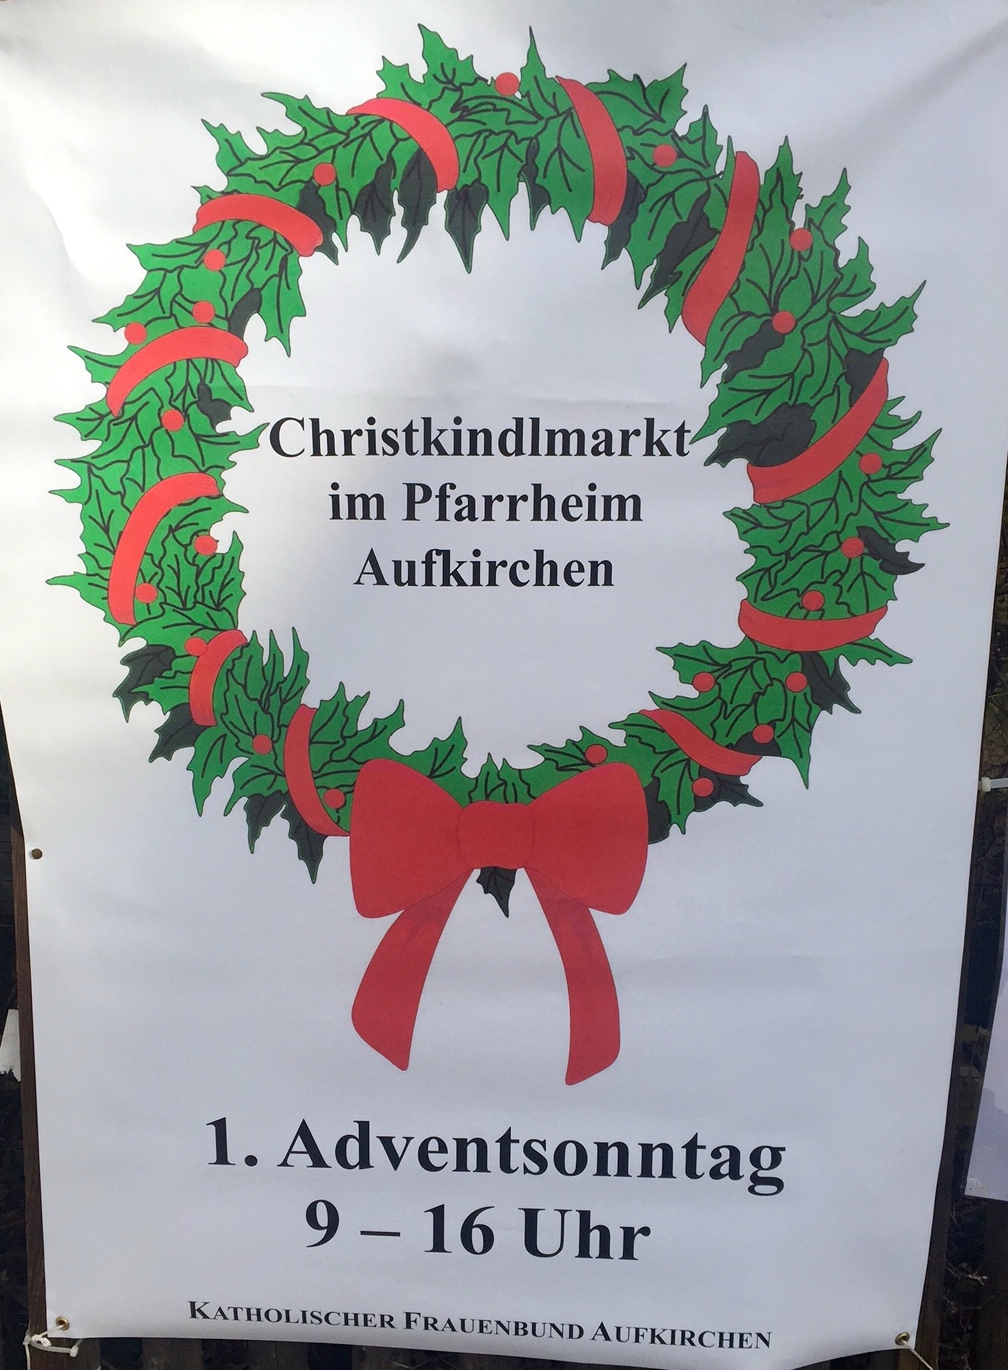 Christkindlmarkt Aufkirchen Pfarrheim